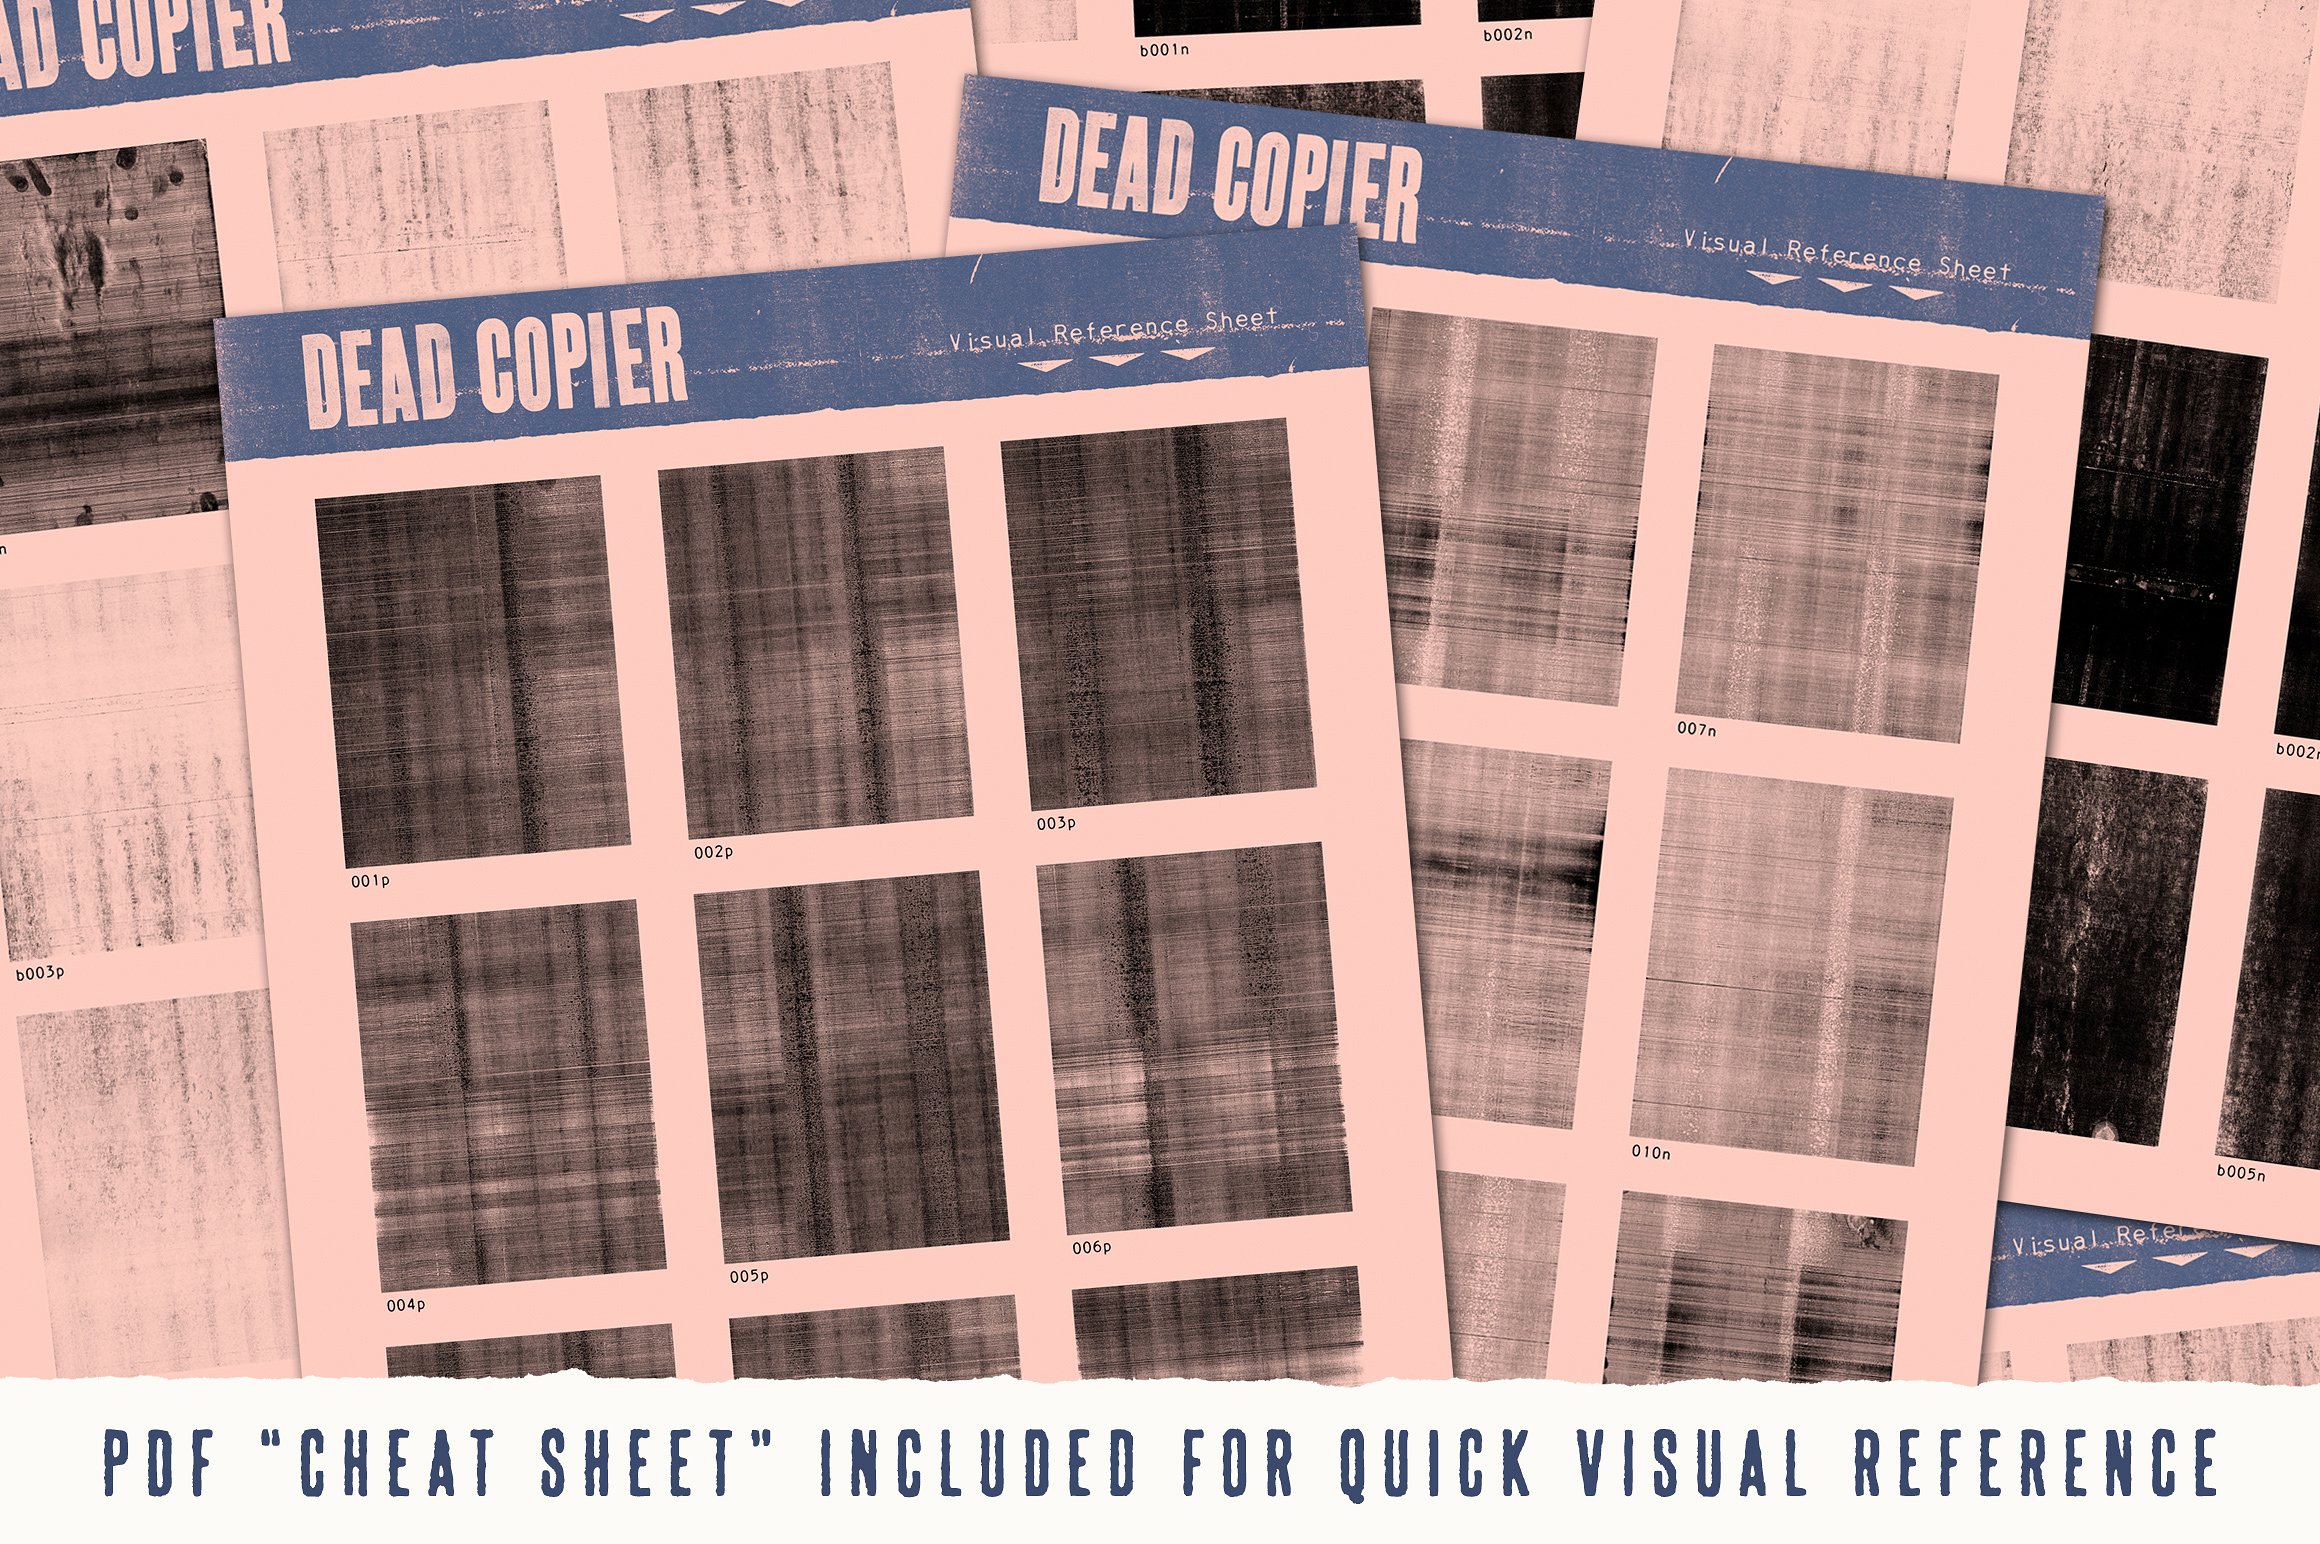 复印机影印纹理素材包 Dead Copier Photocopy Texture Pack插图(1)